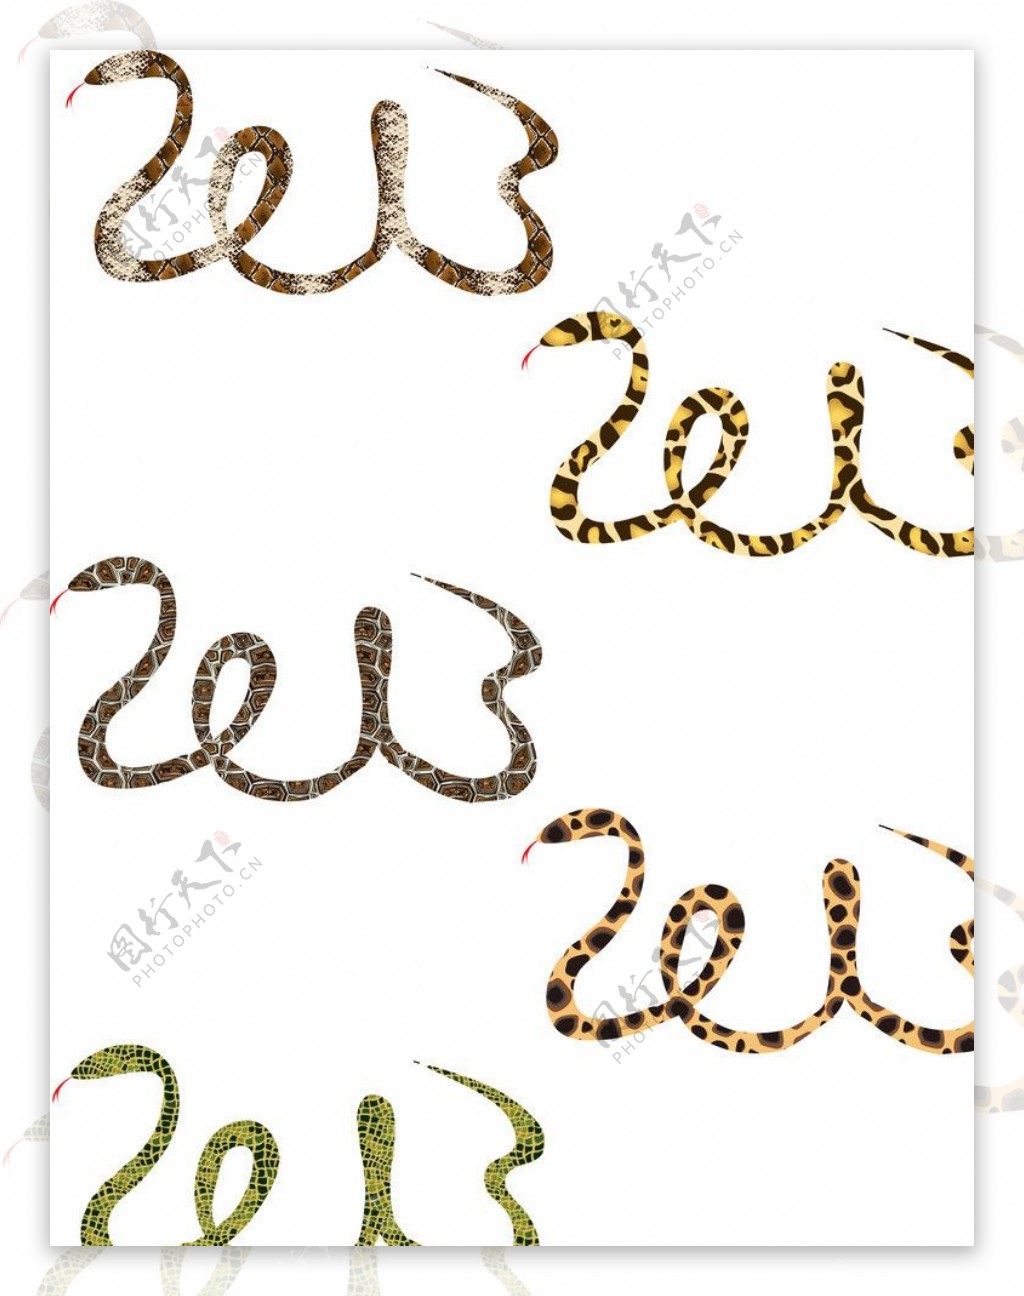 2013蛇形字体图片